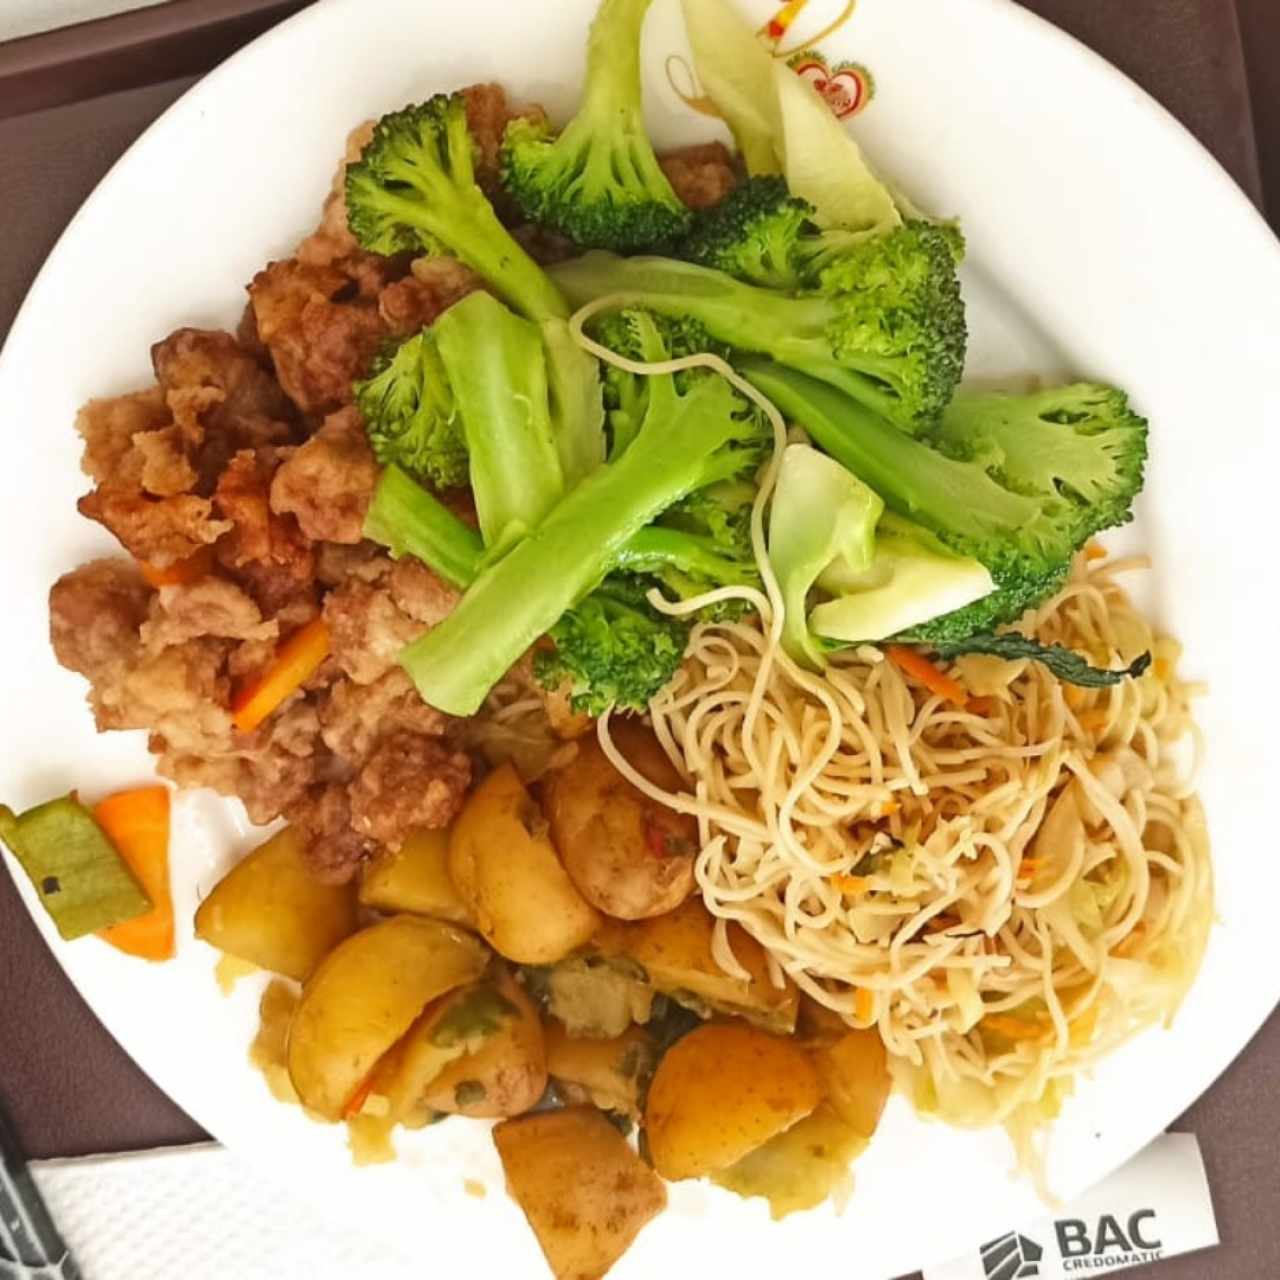 Soya agridulce, brócoli, chow mein, papa